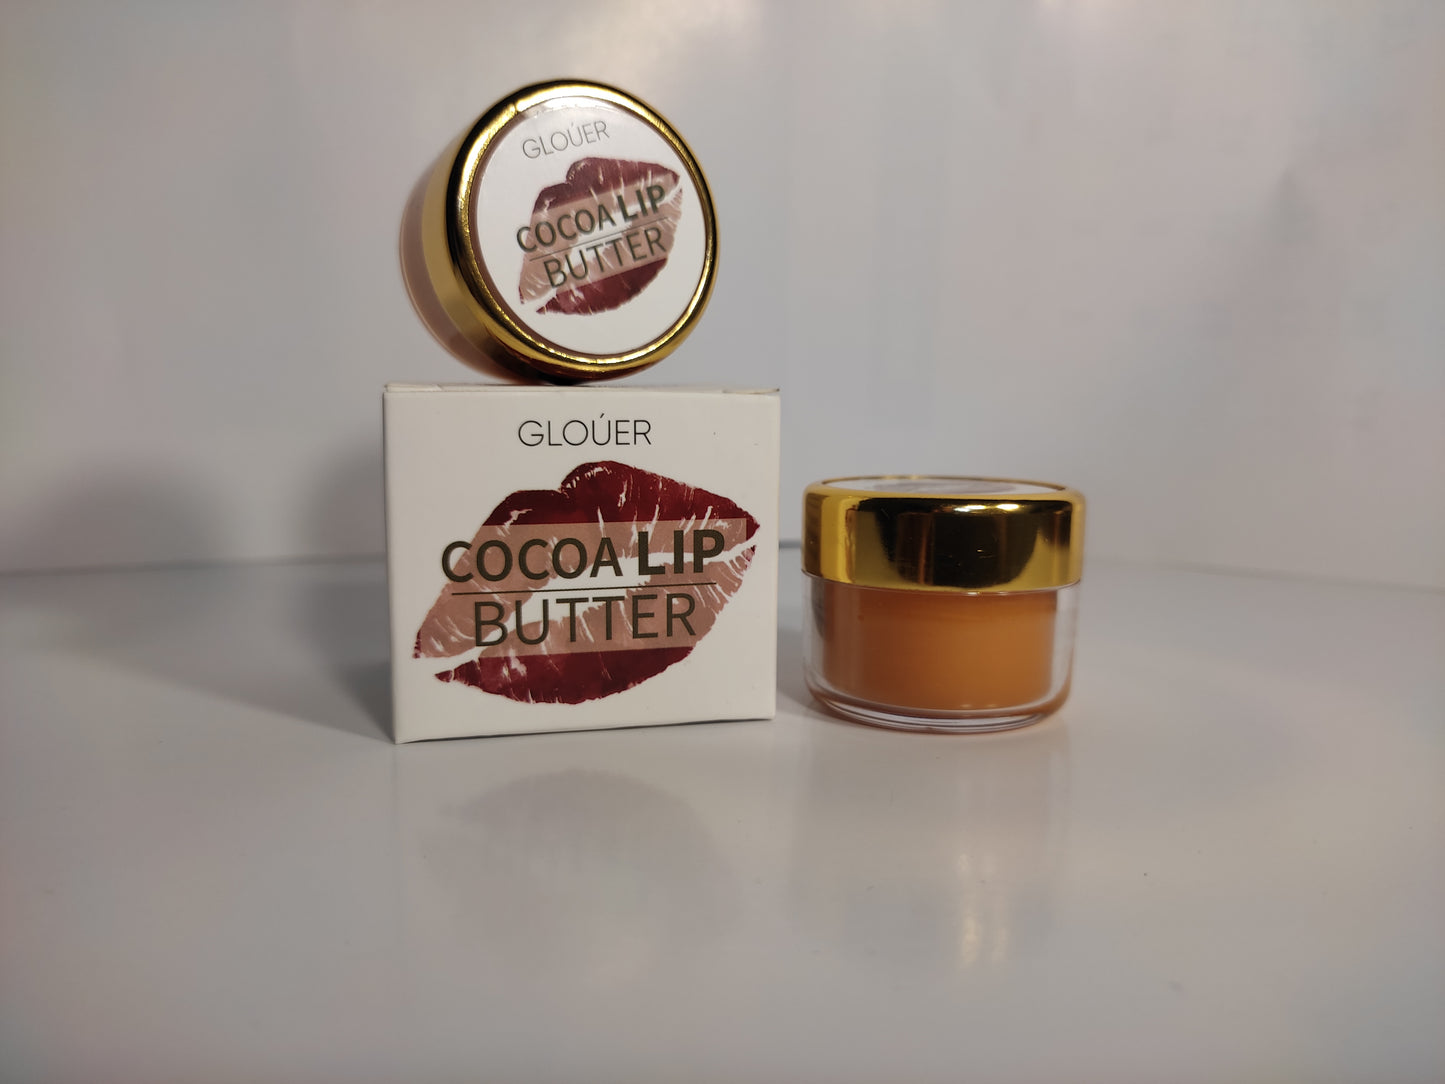 Cocoa Lip Butter